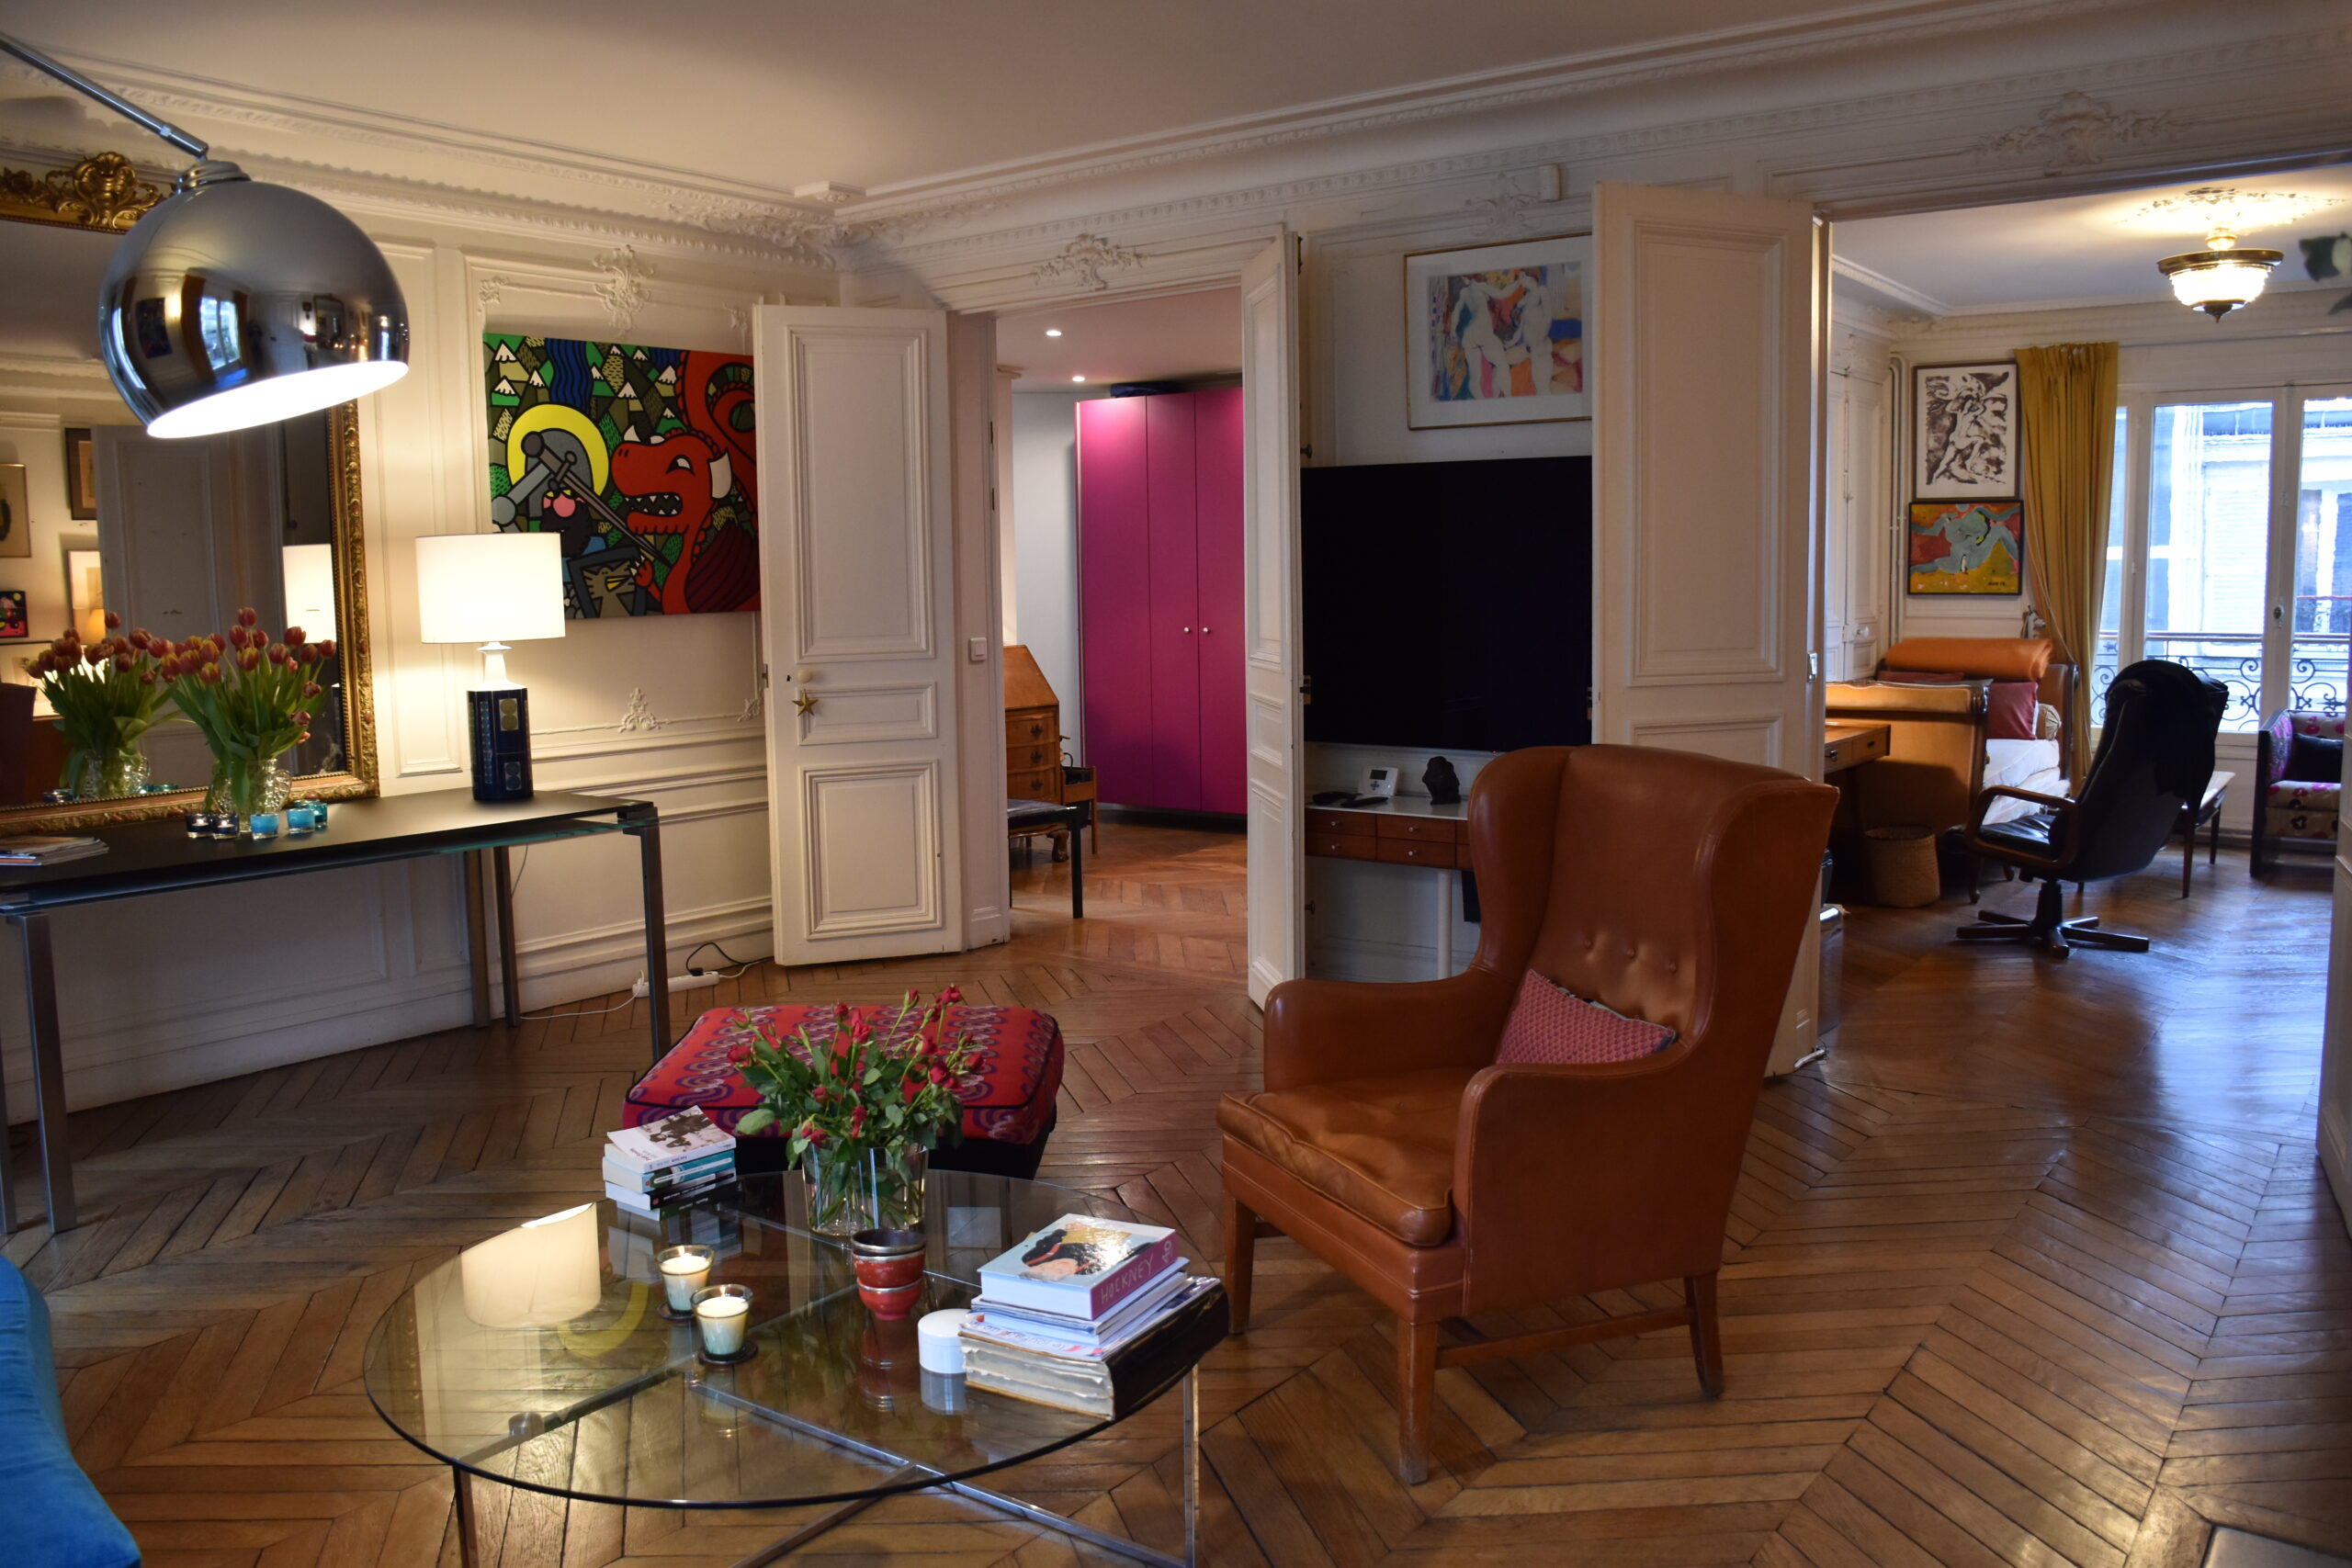 Rue de Paradis - living room view 3